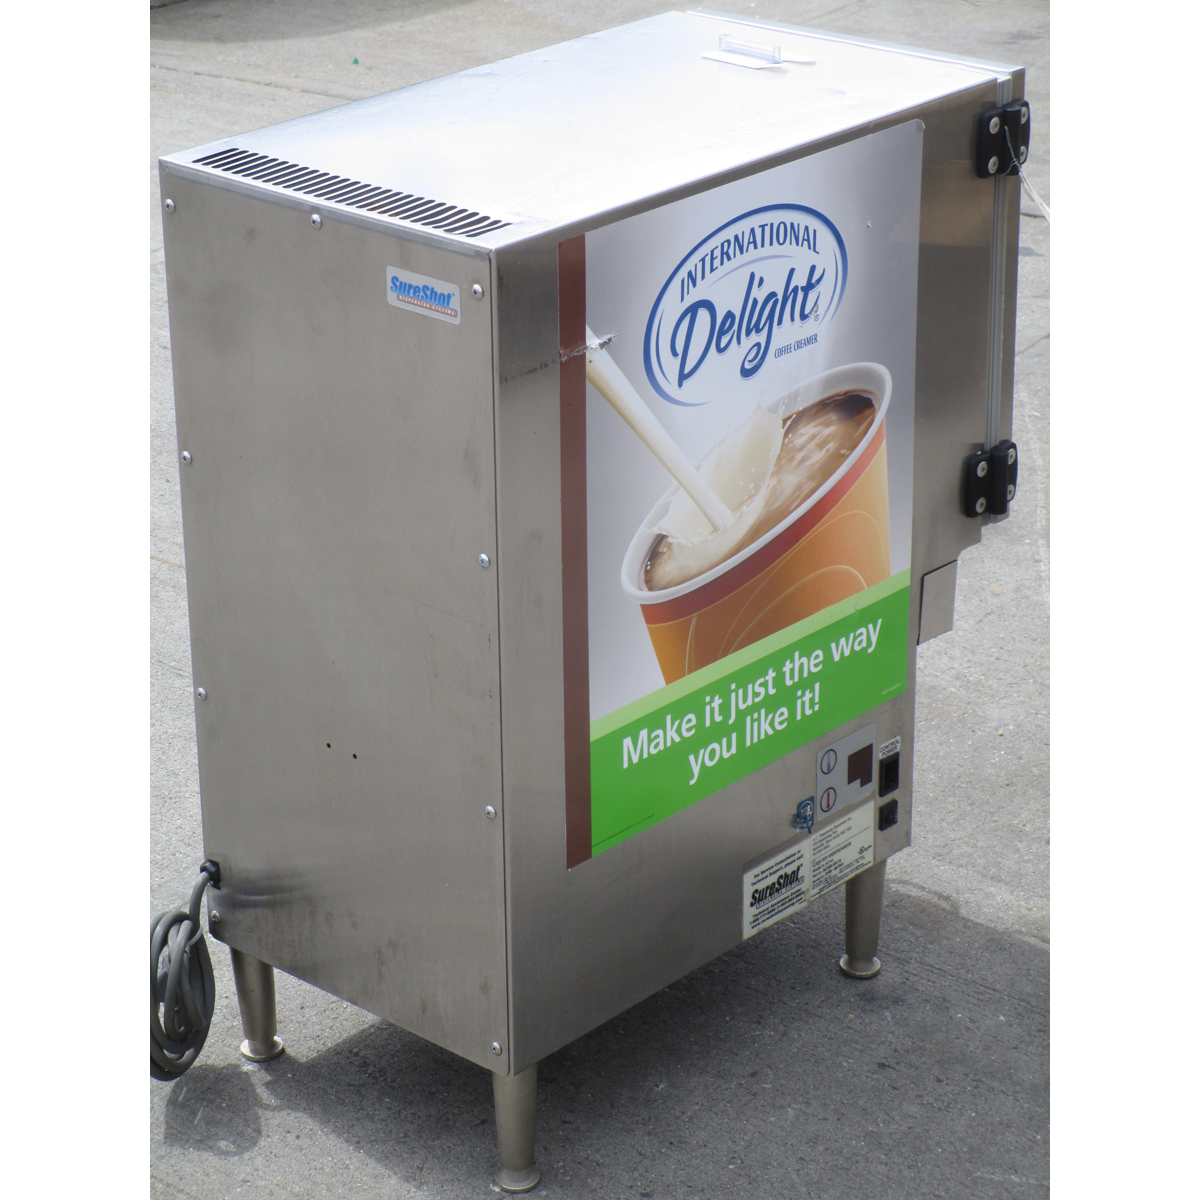 SureShot AC20 Refrigerated Milk/Cream Liquid Dispenser, Used Excellent Condition image 2